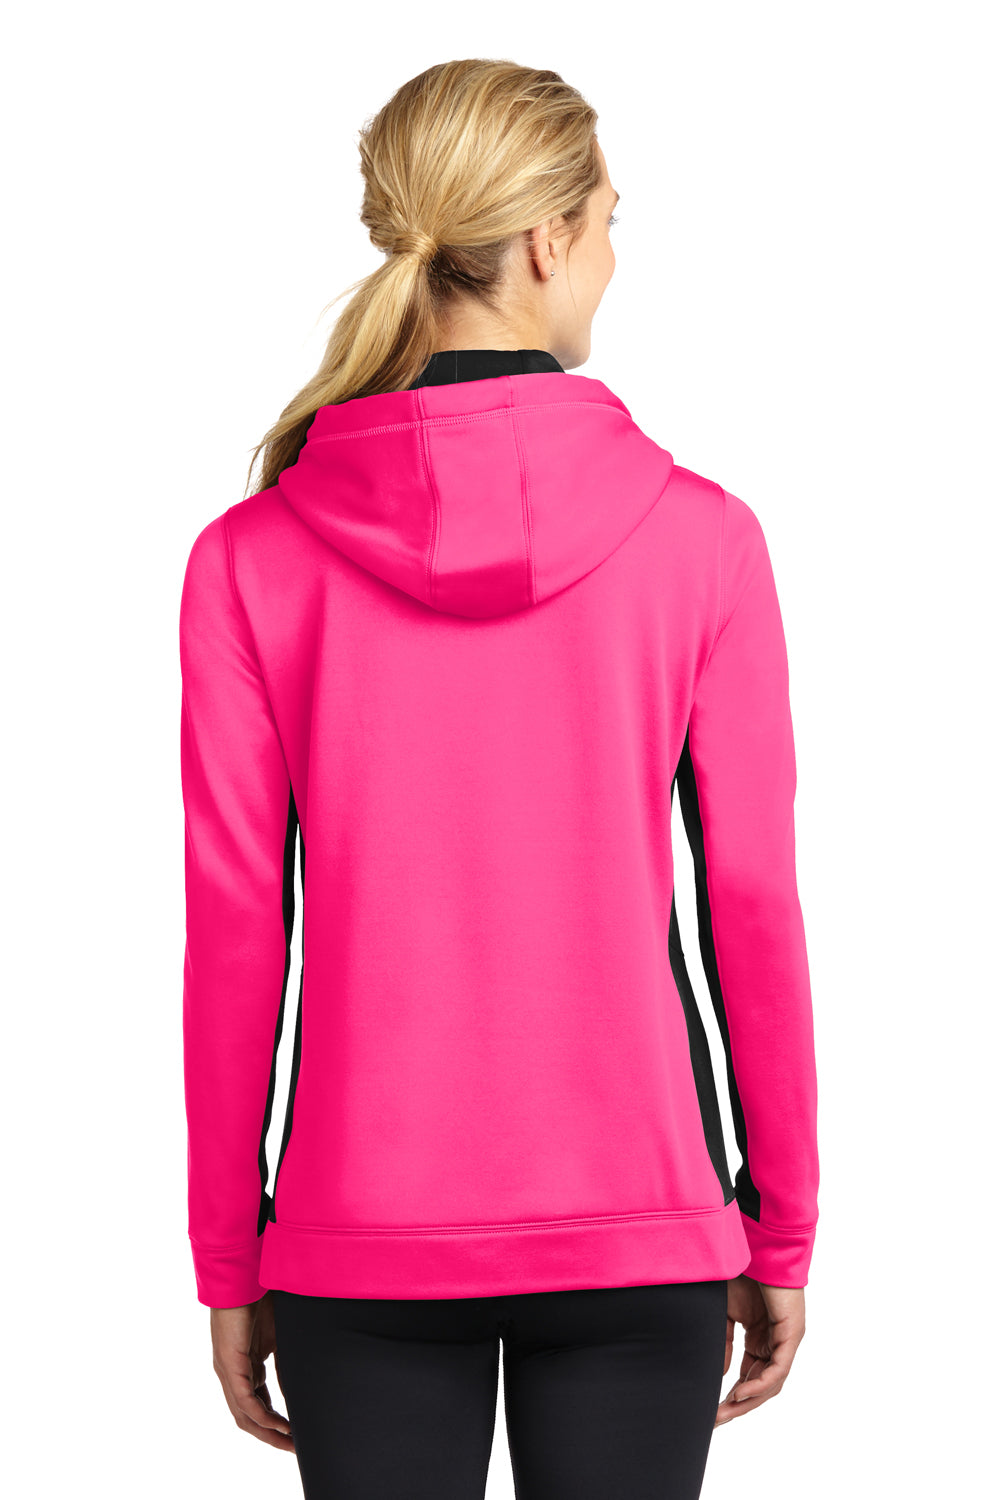 Sport-Tek LST235 Womens Sport-Wick Moisture Wicking Fleece Hooded Sweatshirt Hoodie Neon Pink/Black Back